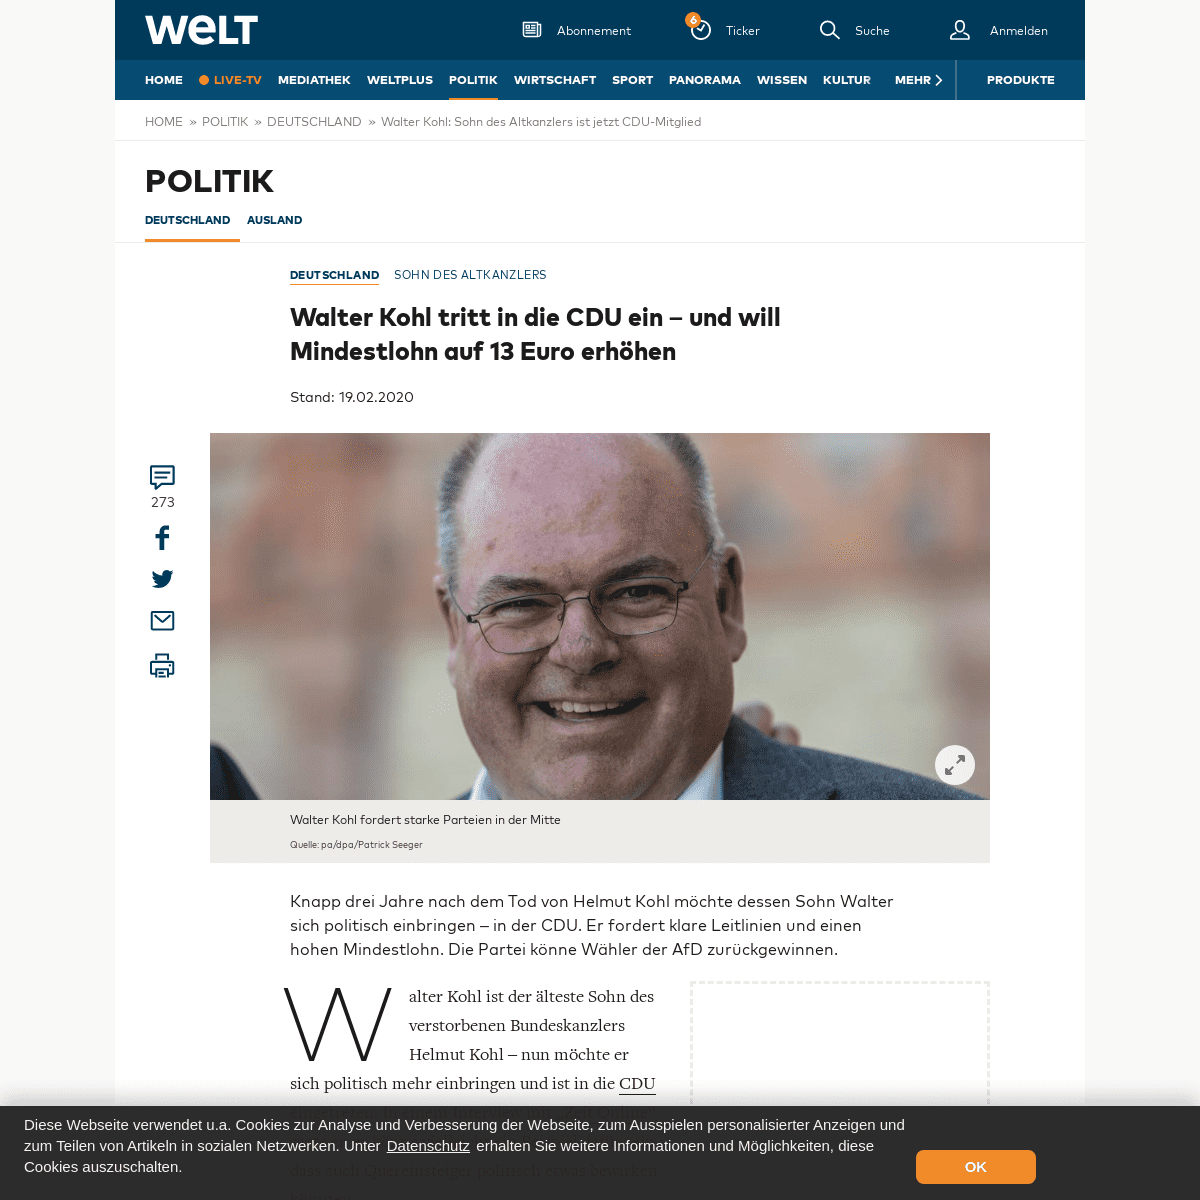 A complete backup of www.welt.de/politik/deutschland/article205992055/Walter-Kohl-Sohn-des-Altkanzlers-ist-jetzt-CDU-Mitglied.ht